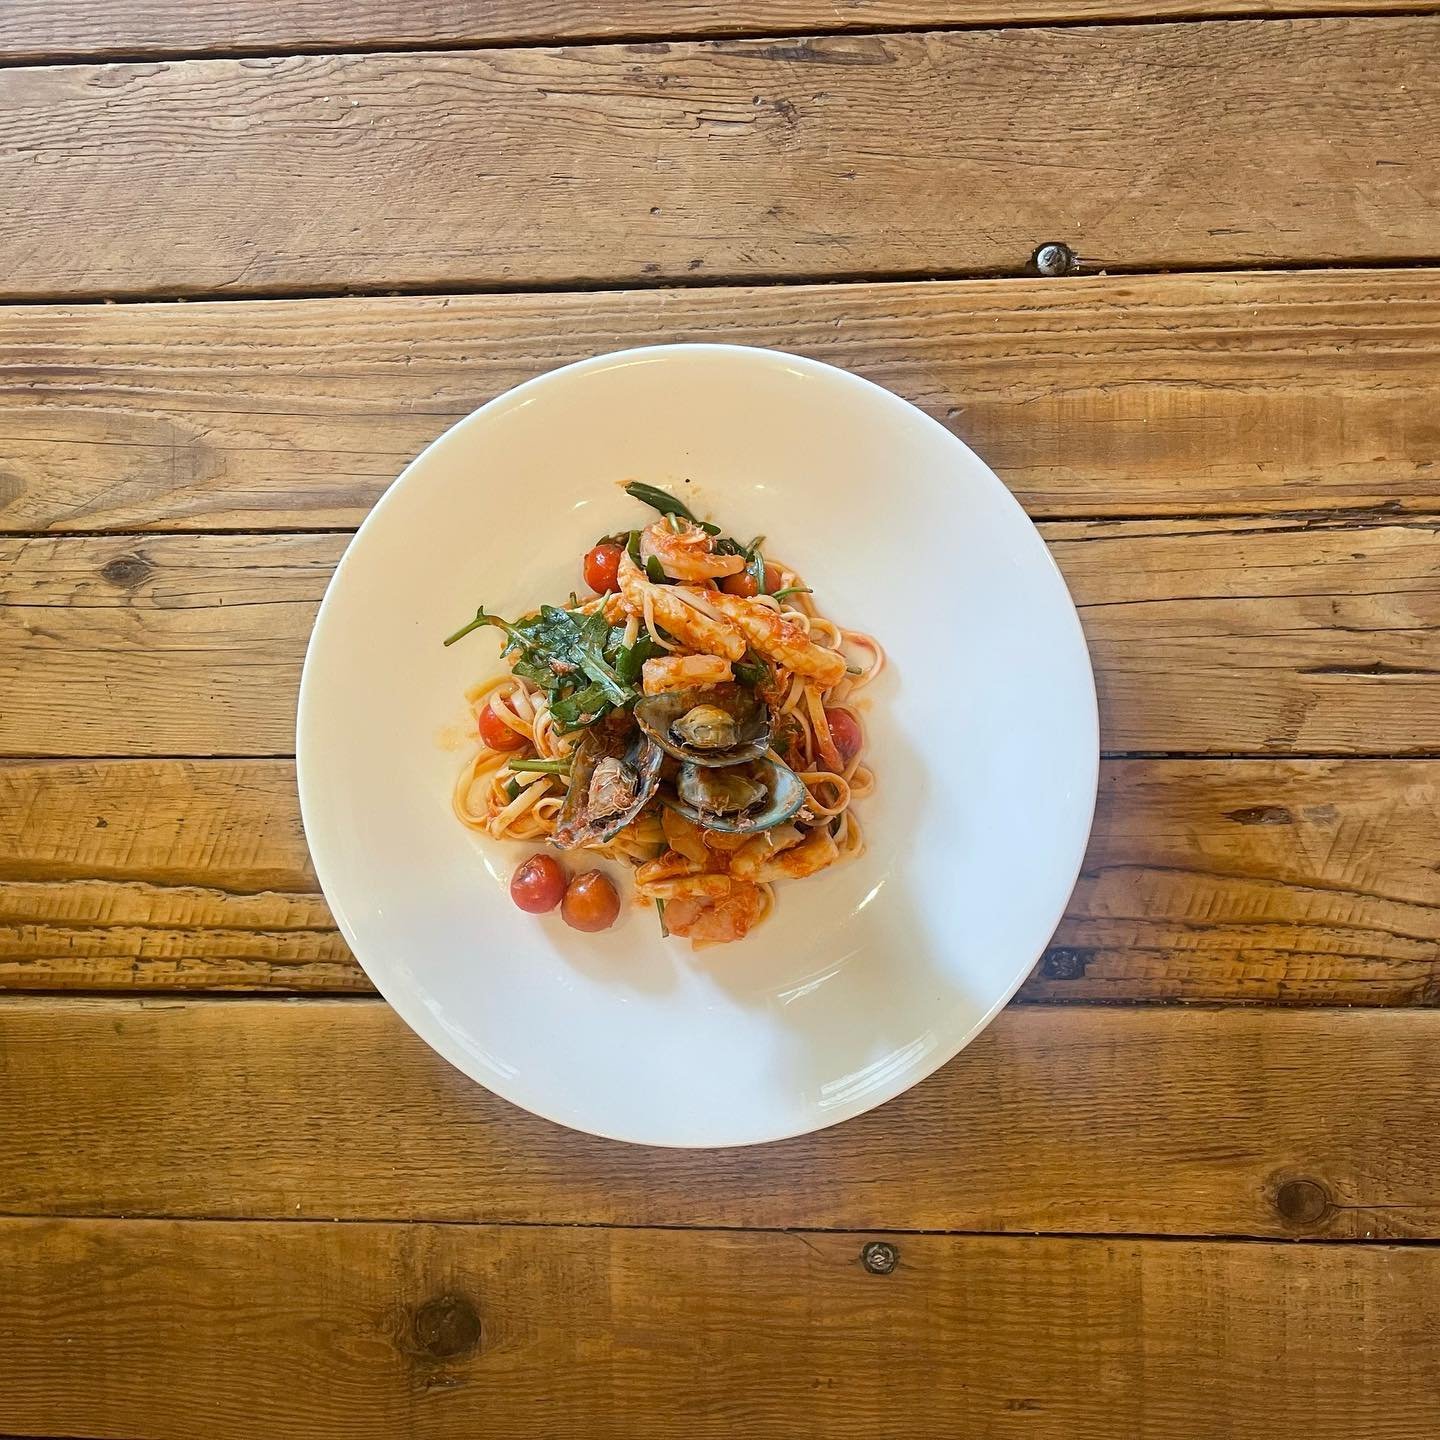 LINGUINI MARINARA
assorted seafood in a light tomato sugo